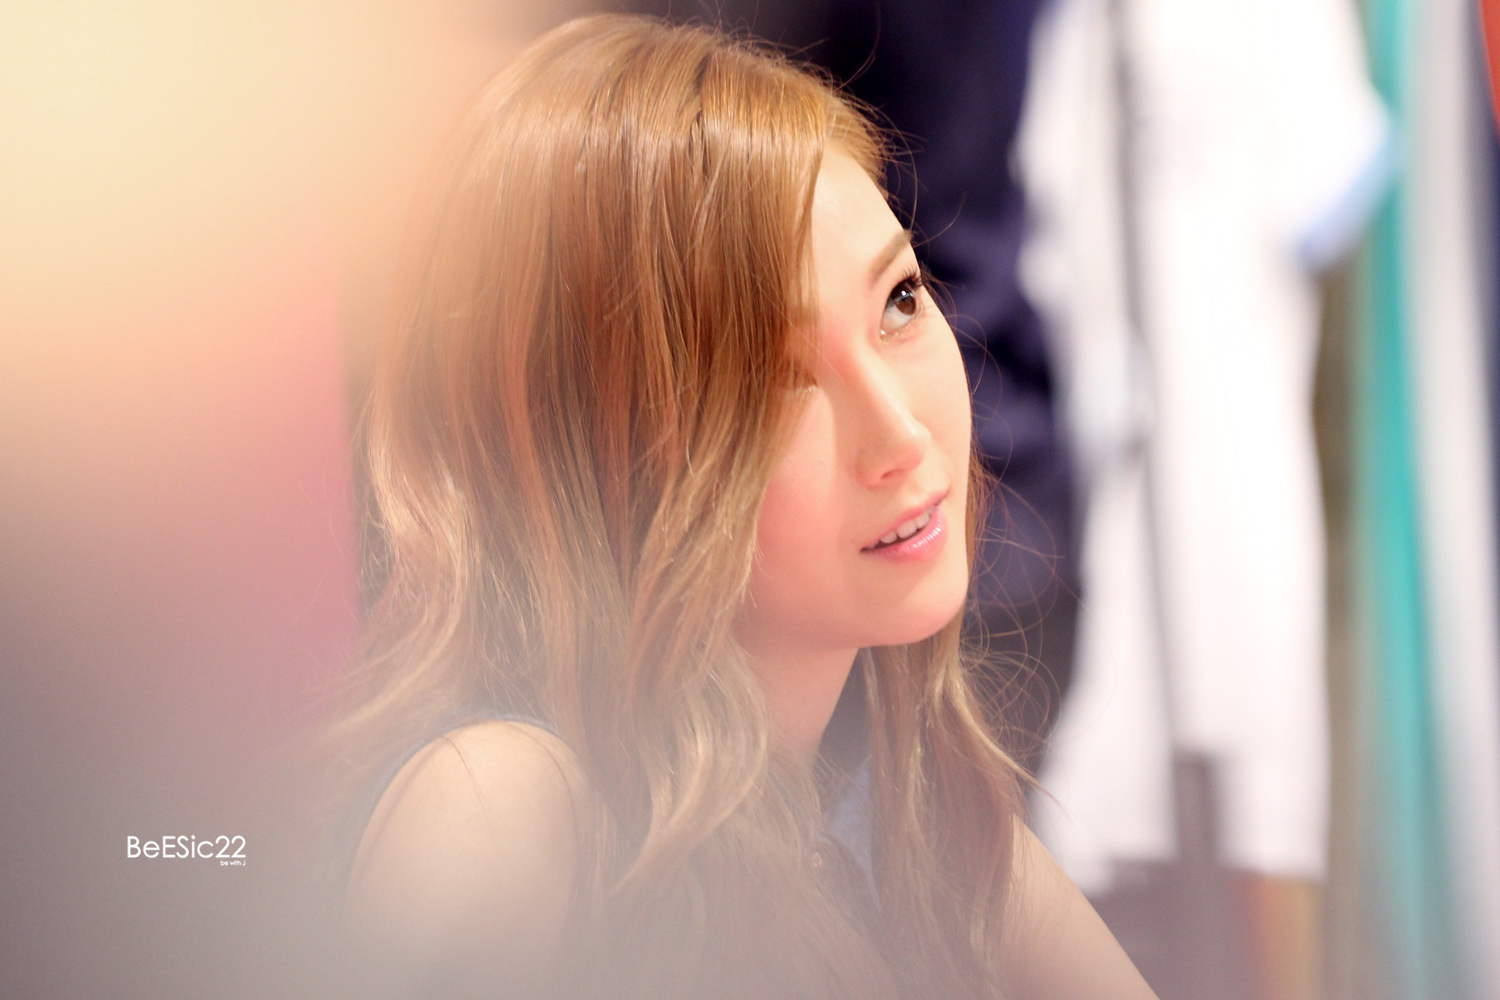 [PIC][14-06-2014]Jessica tham dự buổi fansign lần 2 cho thương hiệu "SOUP" vào trưa nay - Page 2 2773D64353DB9E732A4CE5